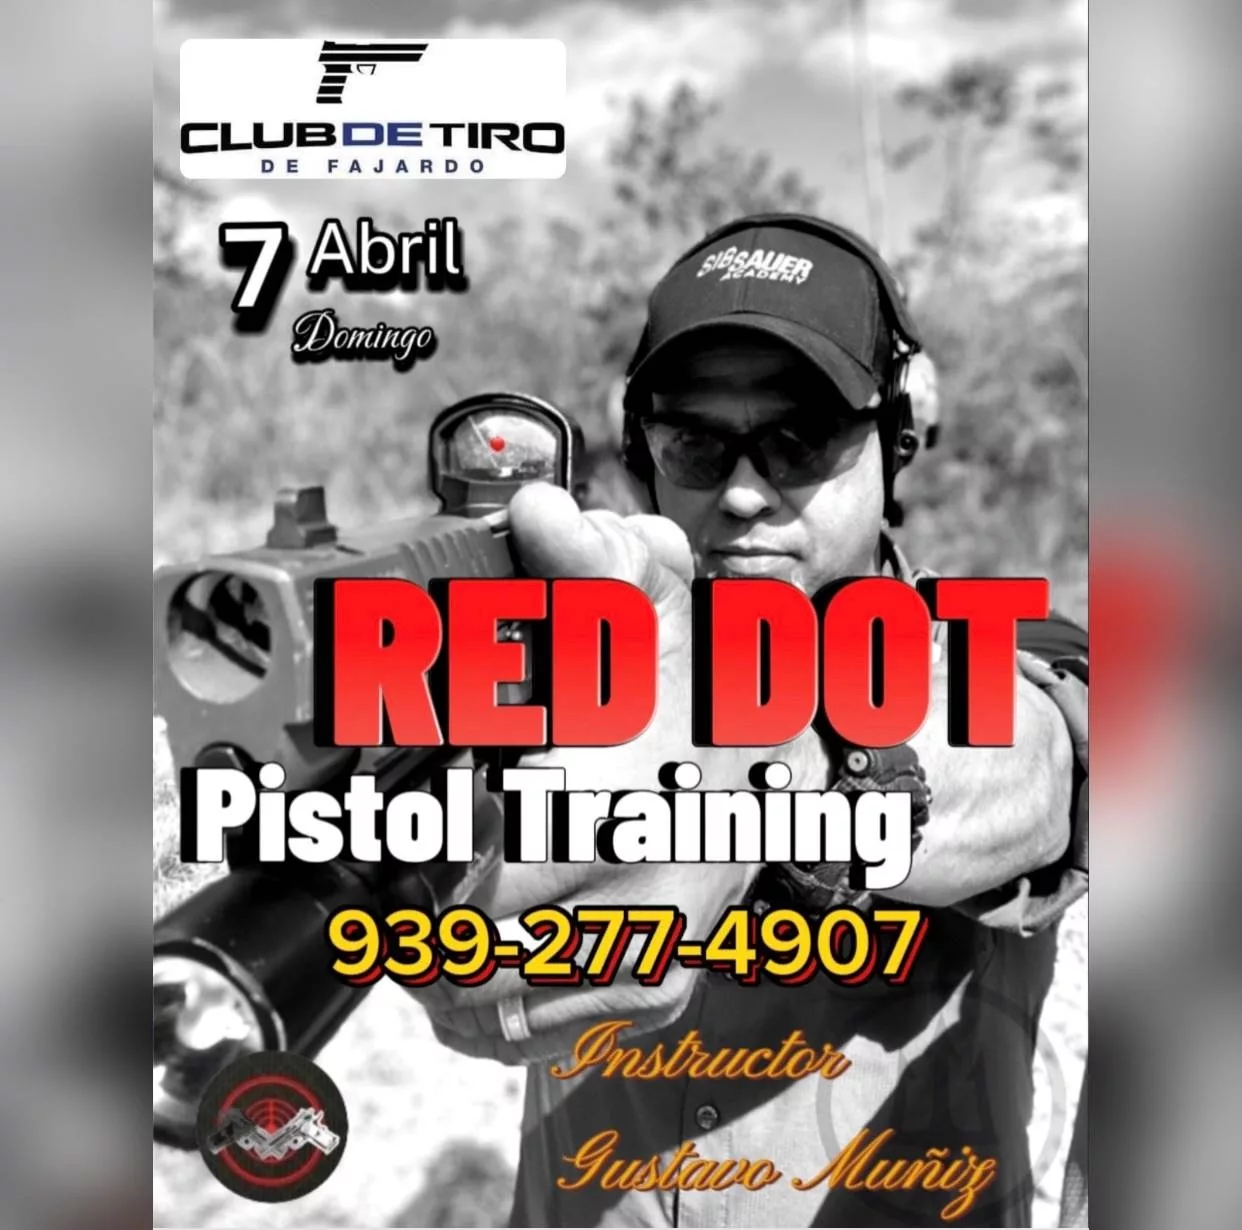 Red Dot Pistol Training - Puerto Rico